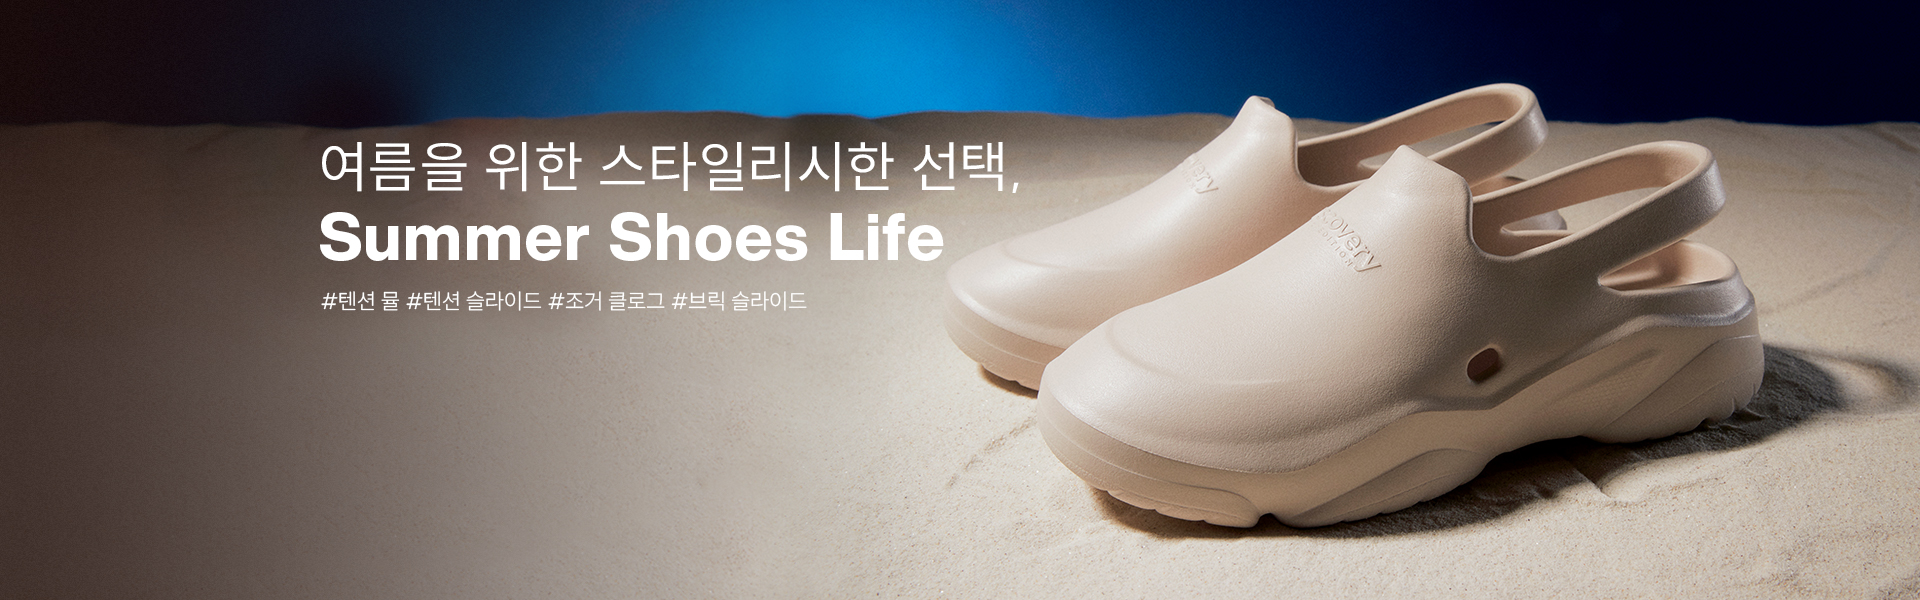 여름을 위한 스타일리시한 선택, Summer Shoes Life